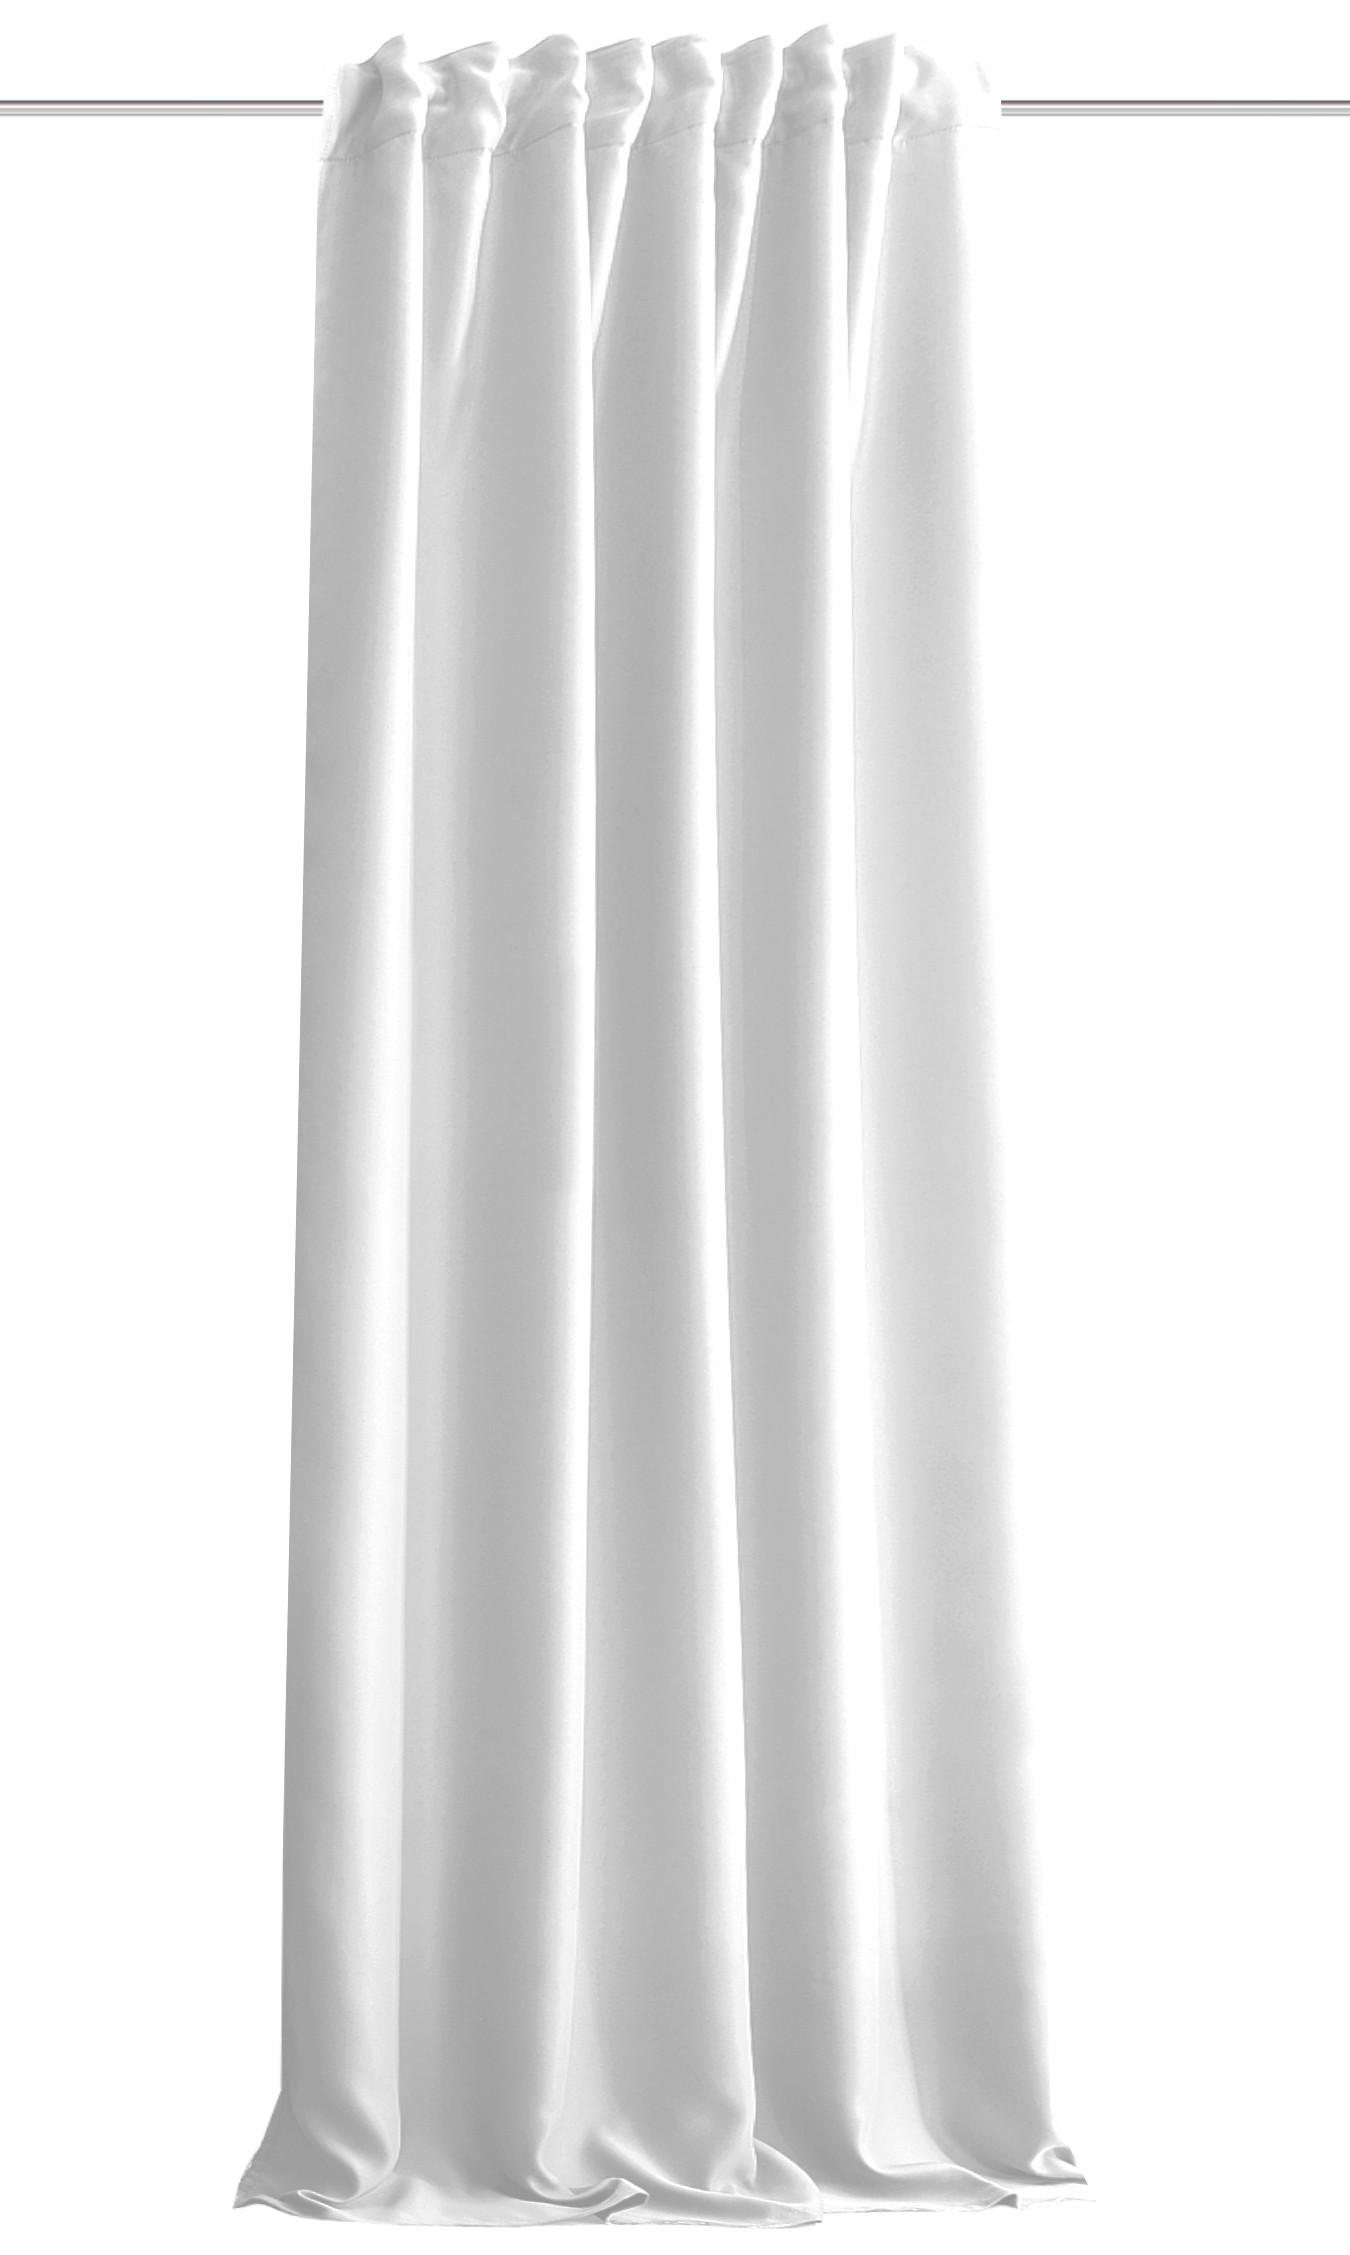 LÄRMSCHUTZVORHANG  blickdicht  135/160 cm   - Weiß, KONVENTIONELL, Textil (135/160cm)